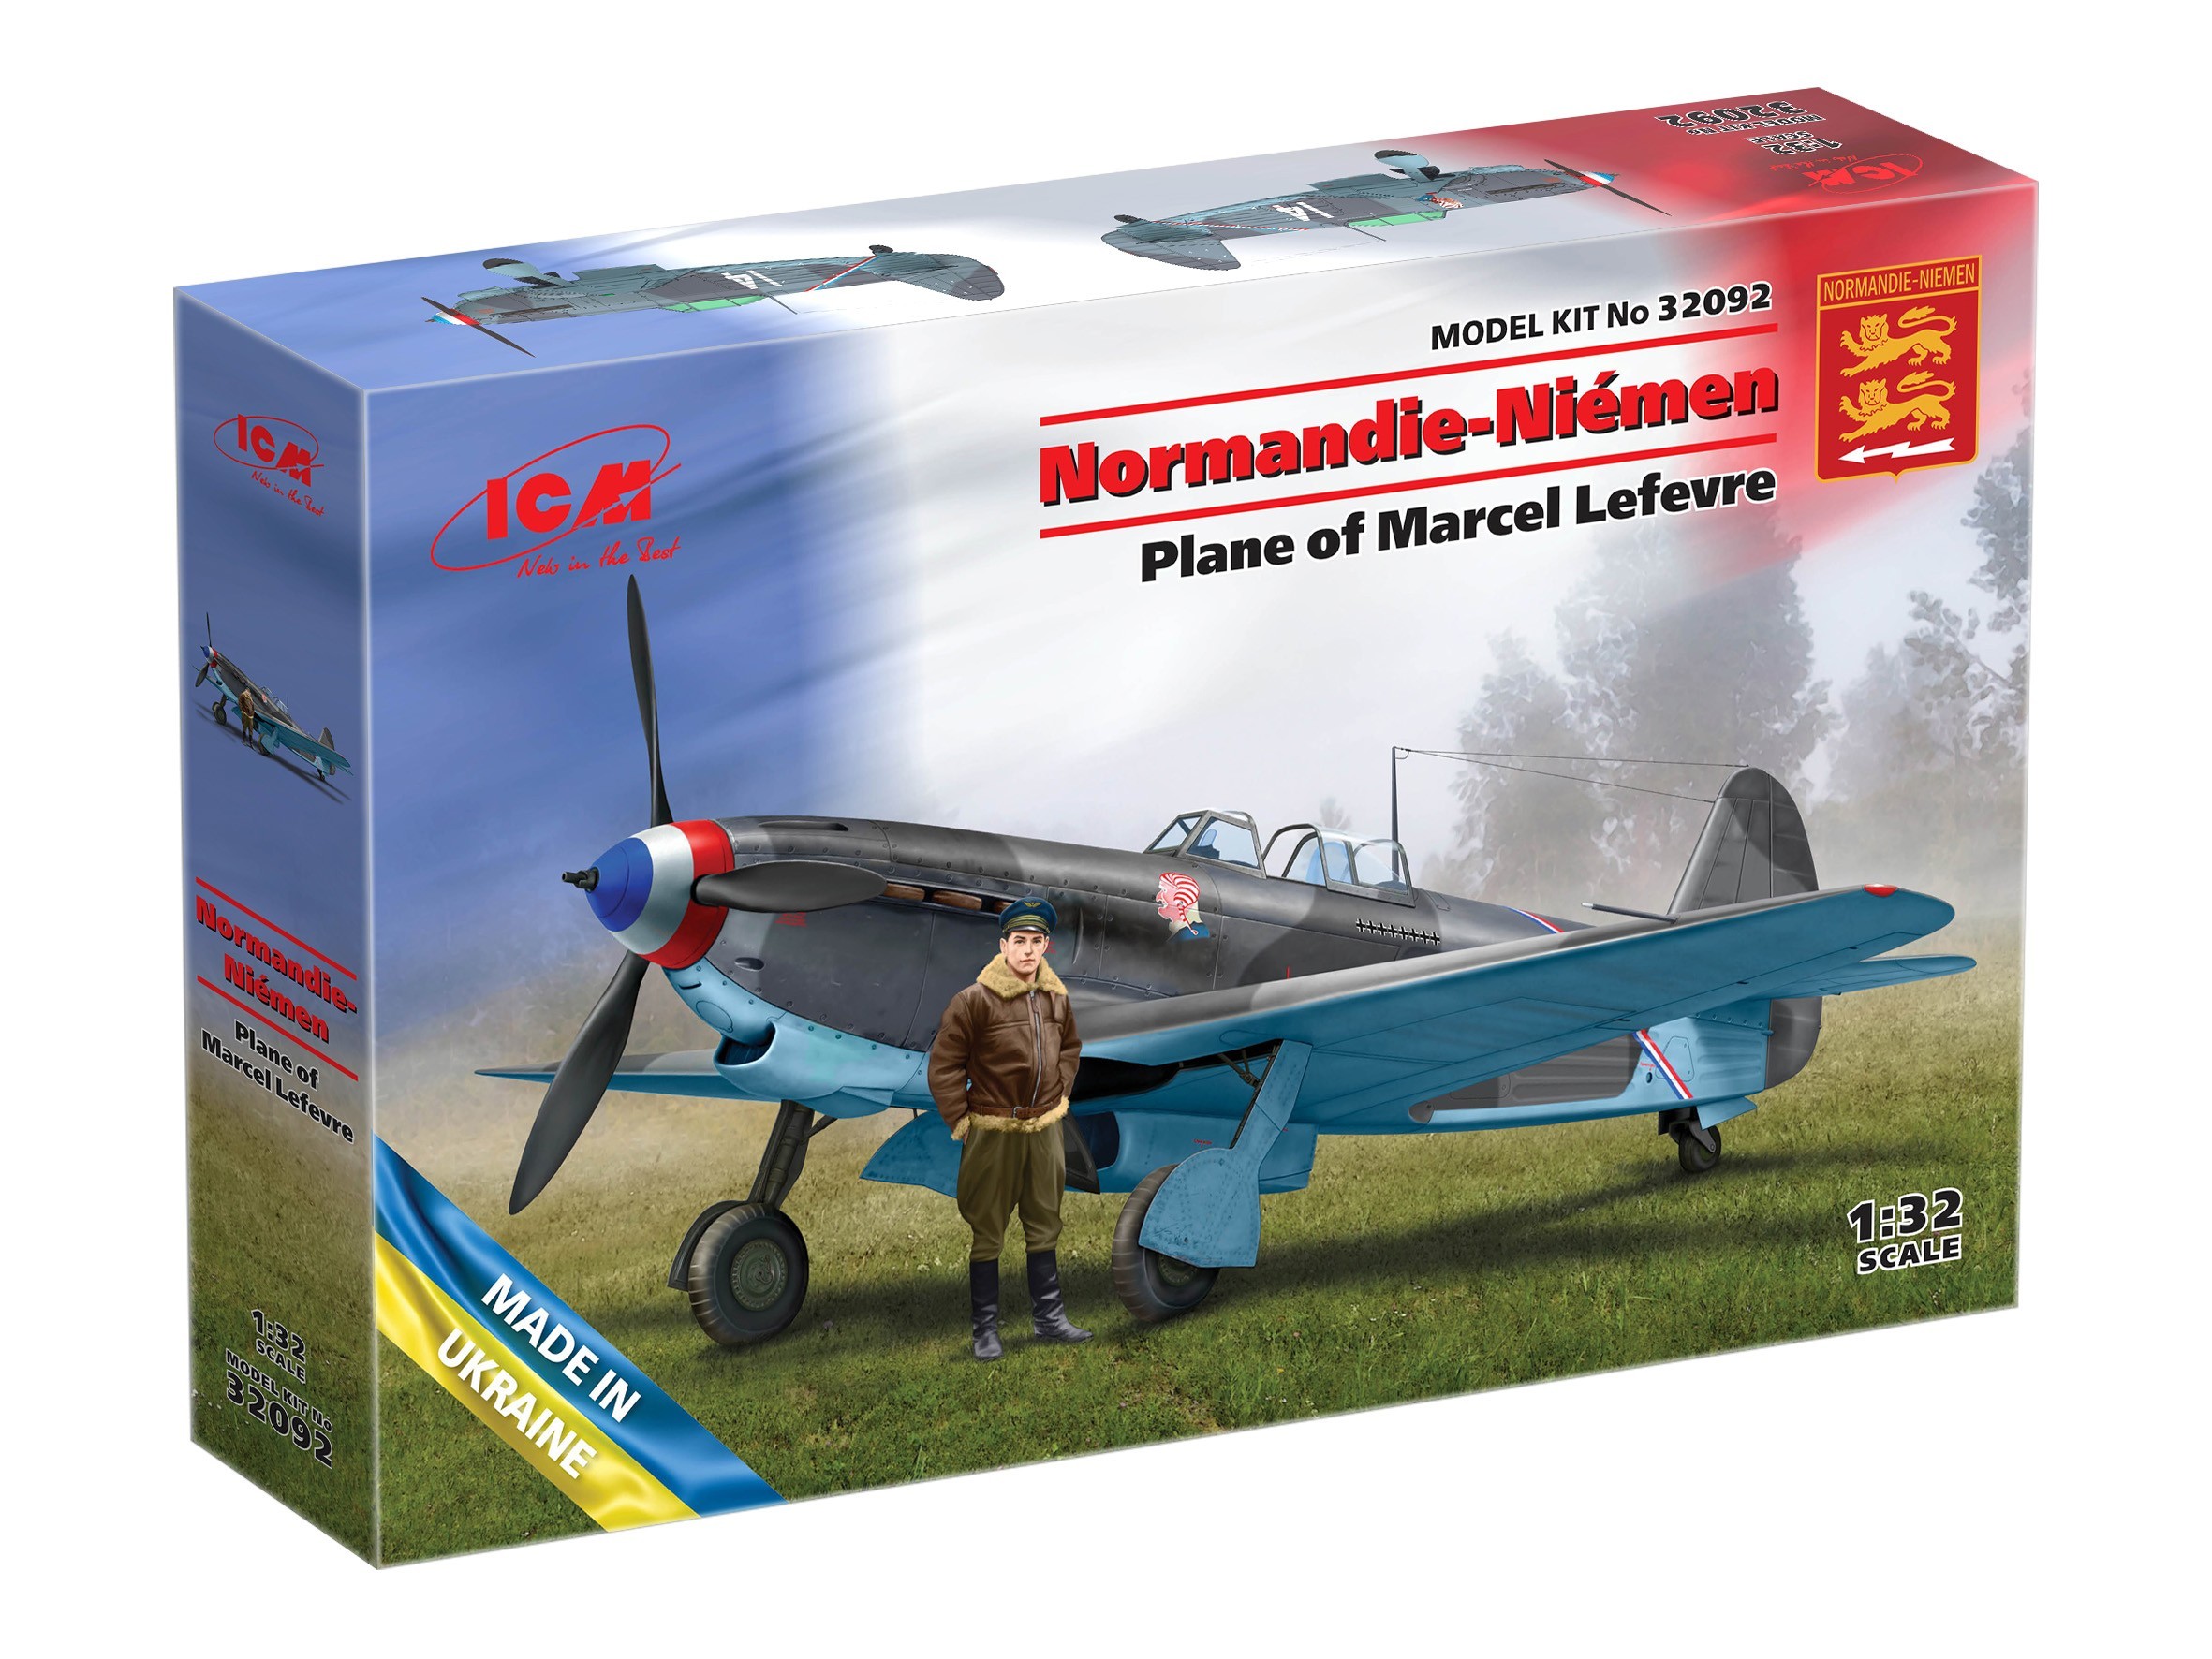 5. #32092 - Normandy-Niemen. Plane of Marcel Lefevre (Yak-9T with Marcel Lefevre figure) - 1:32